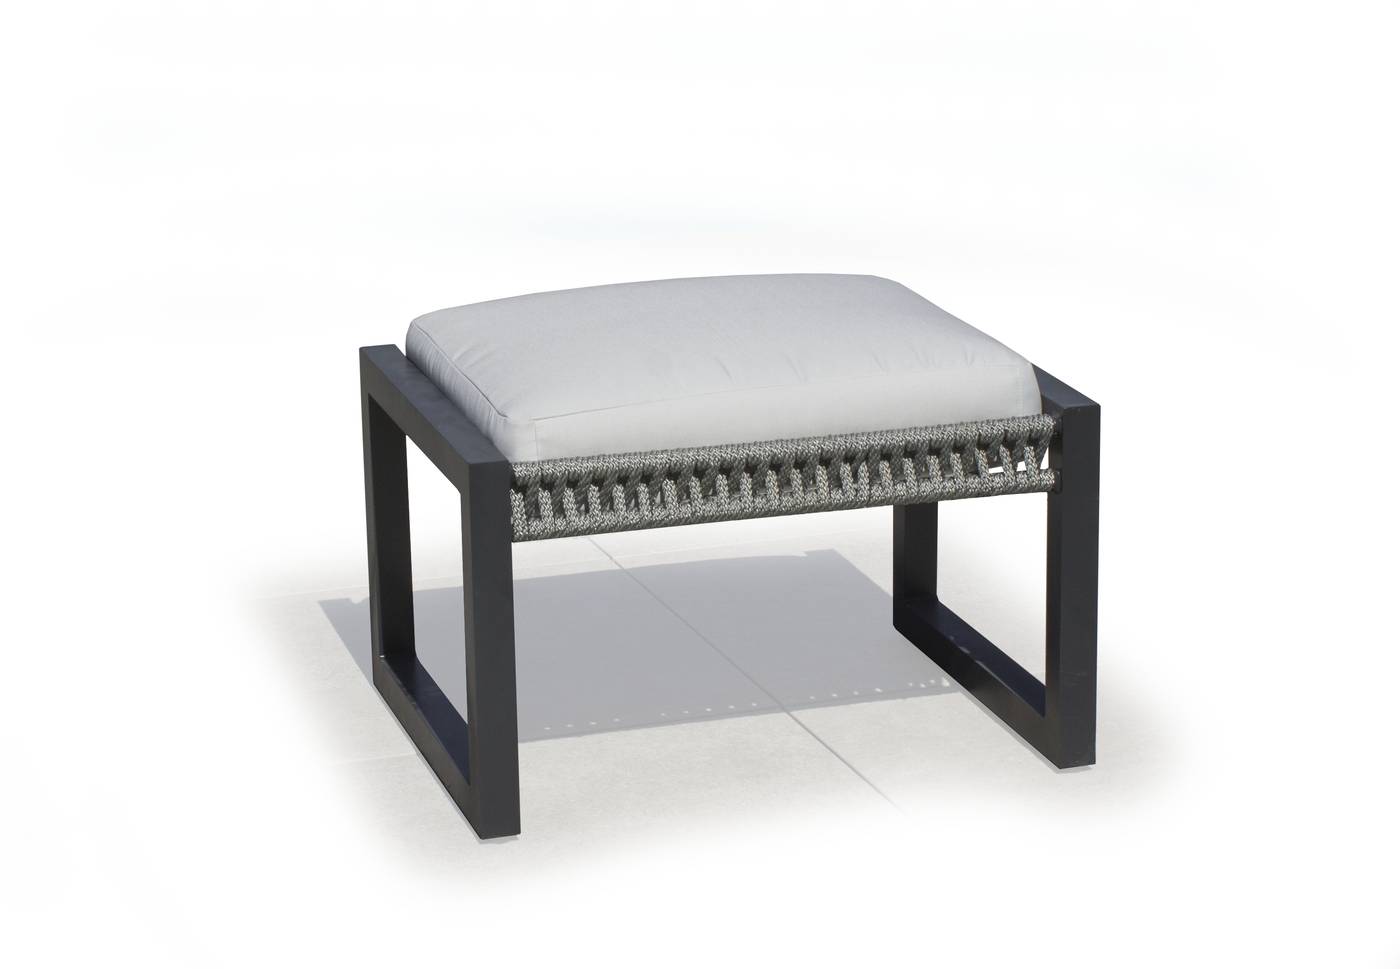 Set Aluminio Bolonia-980 - Conjunto aluminio y cuerda: 1 sofá de 3 plazas + 2 sillones + 1 mesa de centro + 2 taburetes + cojines. Respaldos reclinables. Colores: blanco, gris, marrón o champagne.